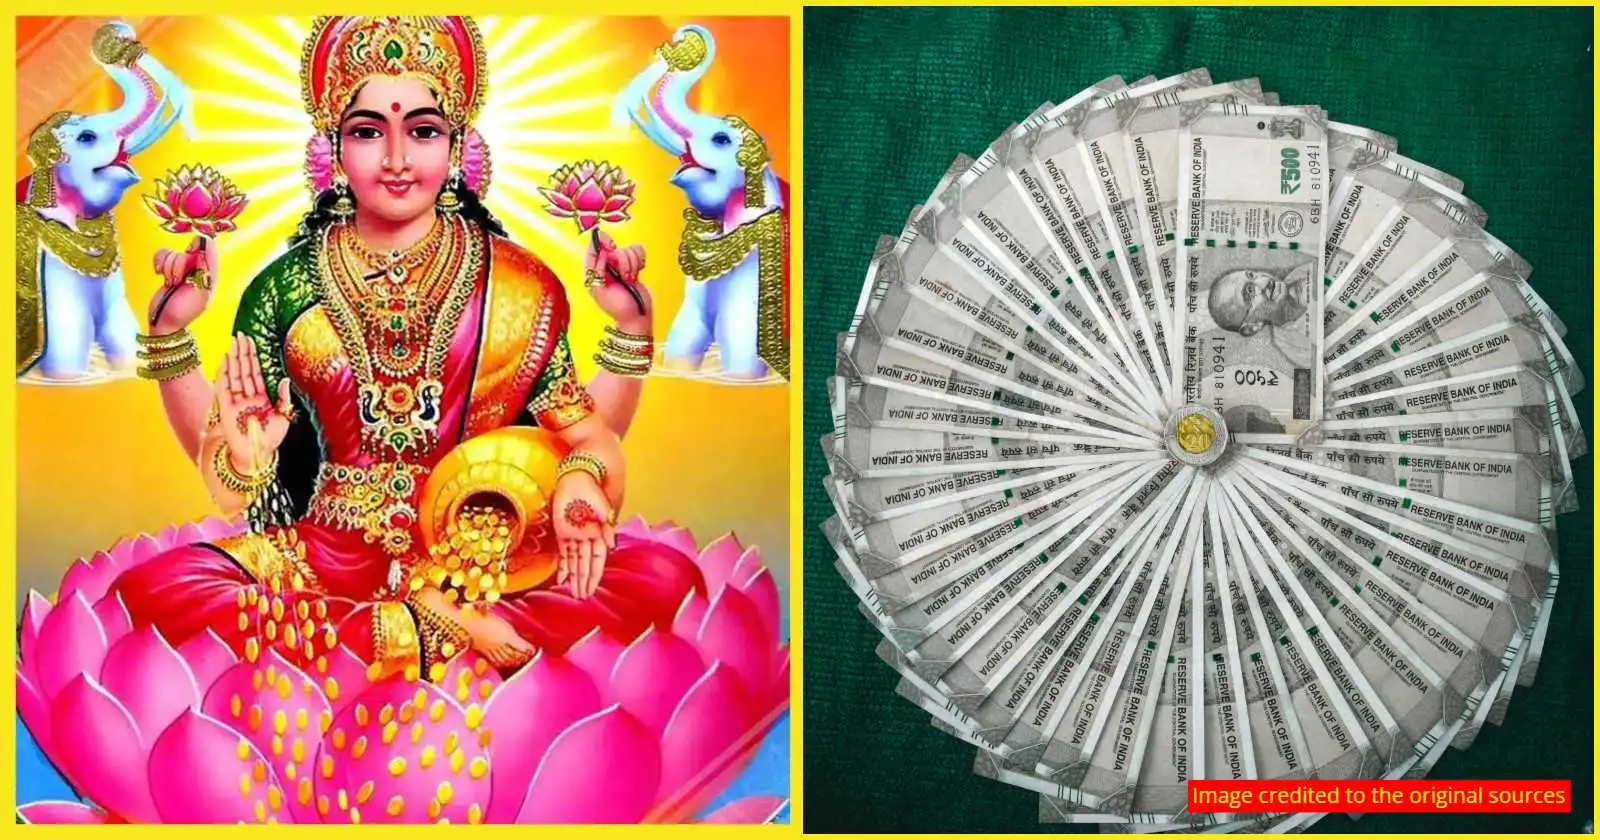 Kannada Horoscope Predictions After Mahalaya amavasya- These zodiac signs will get benefits after Mahalaya Amavasya.